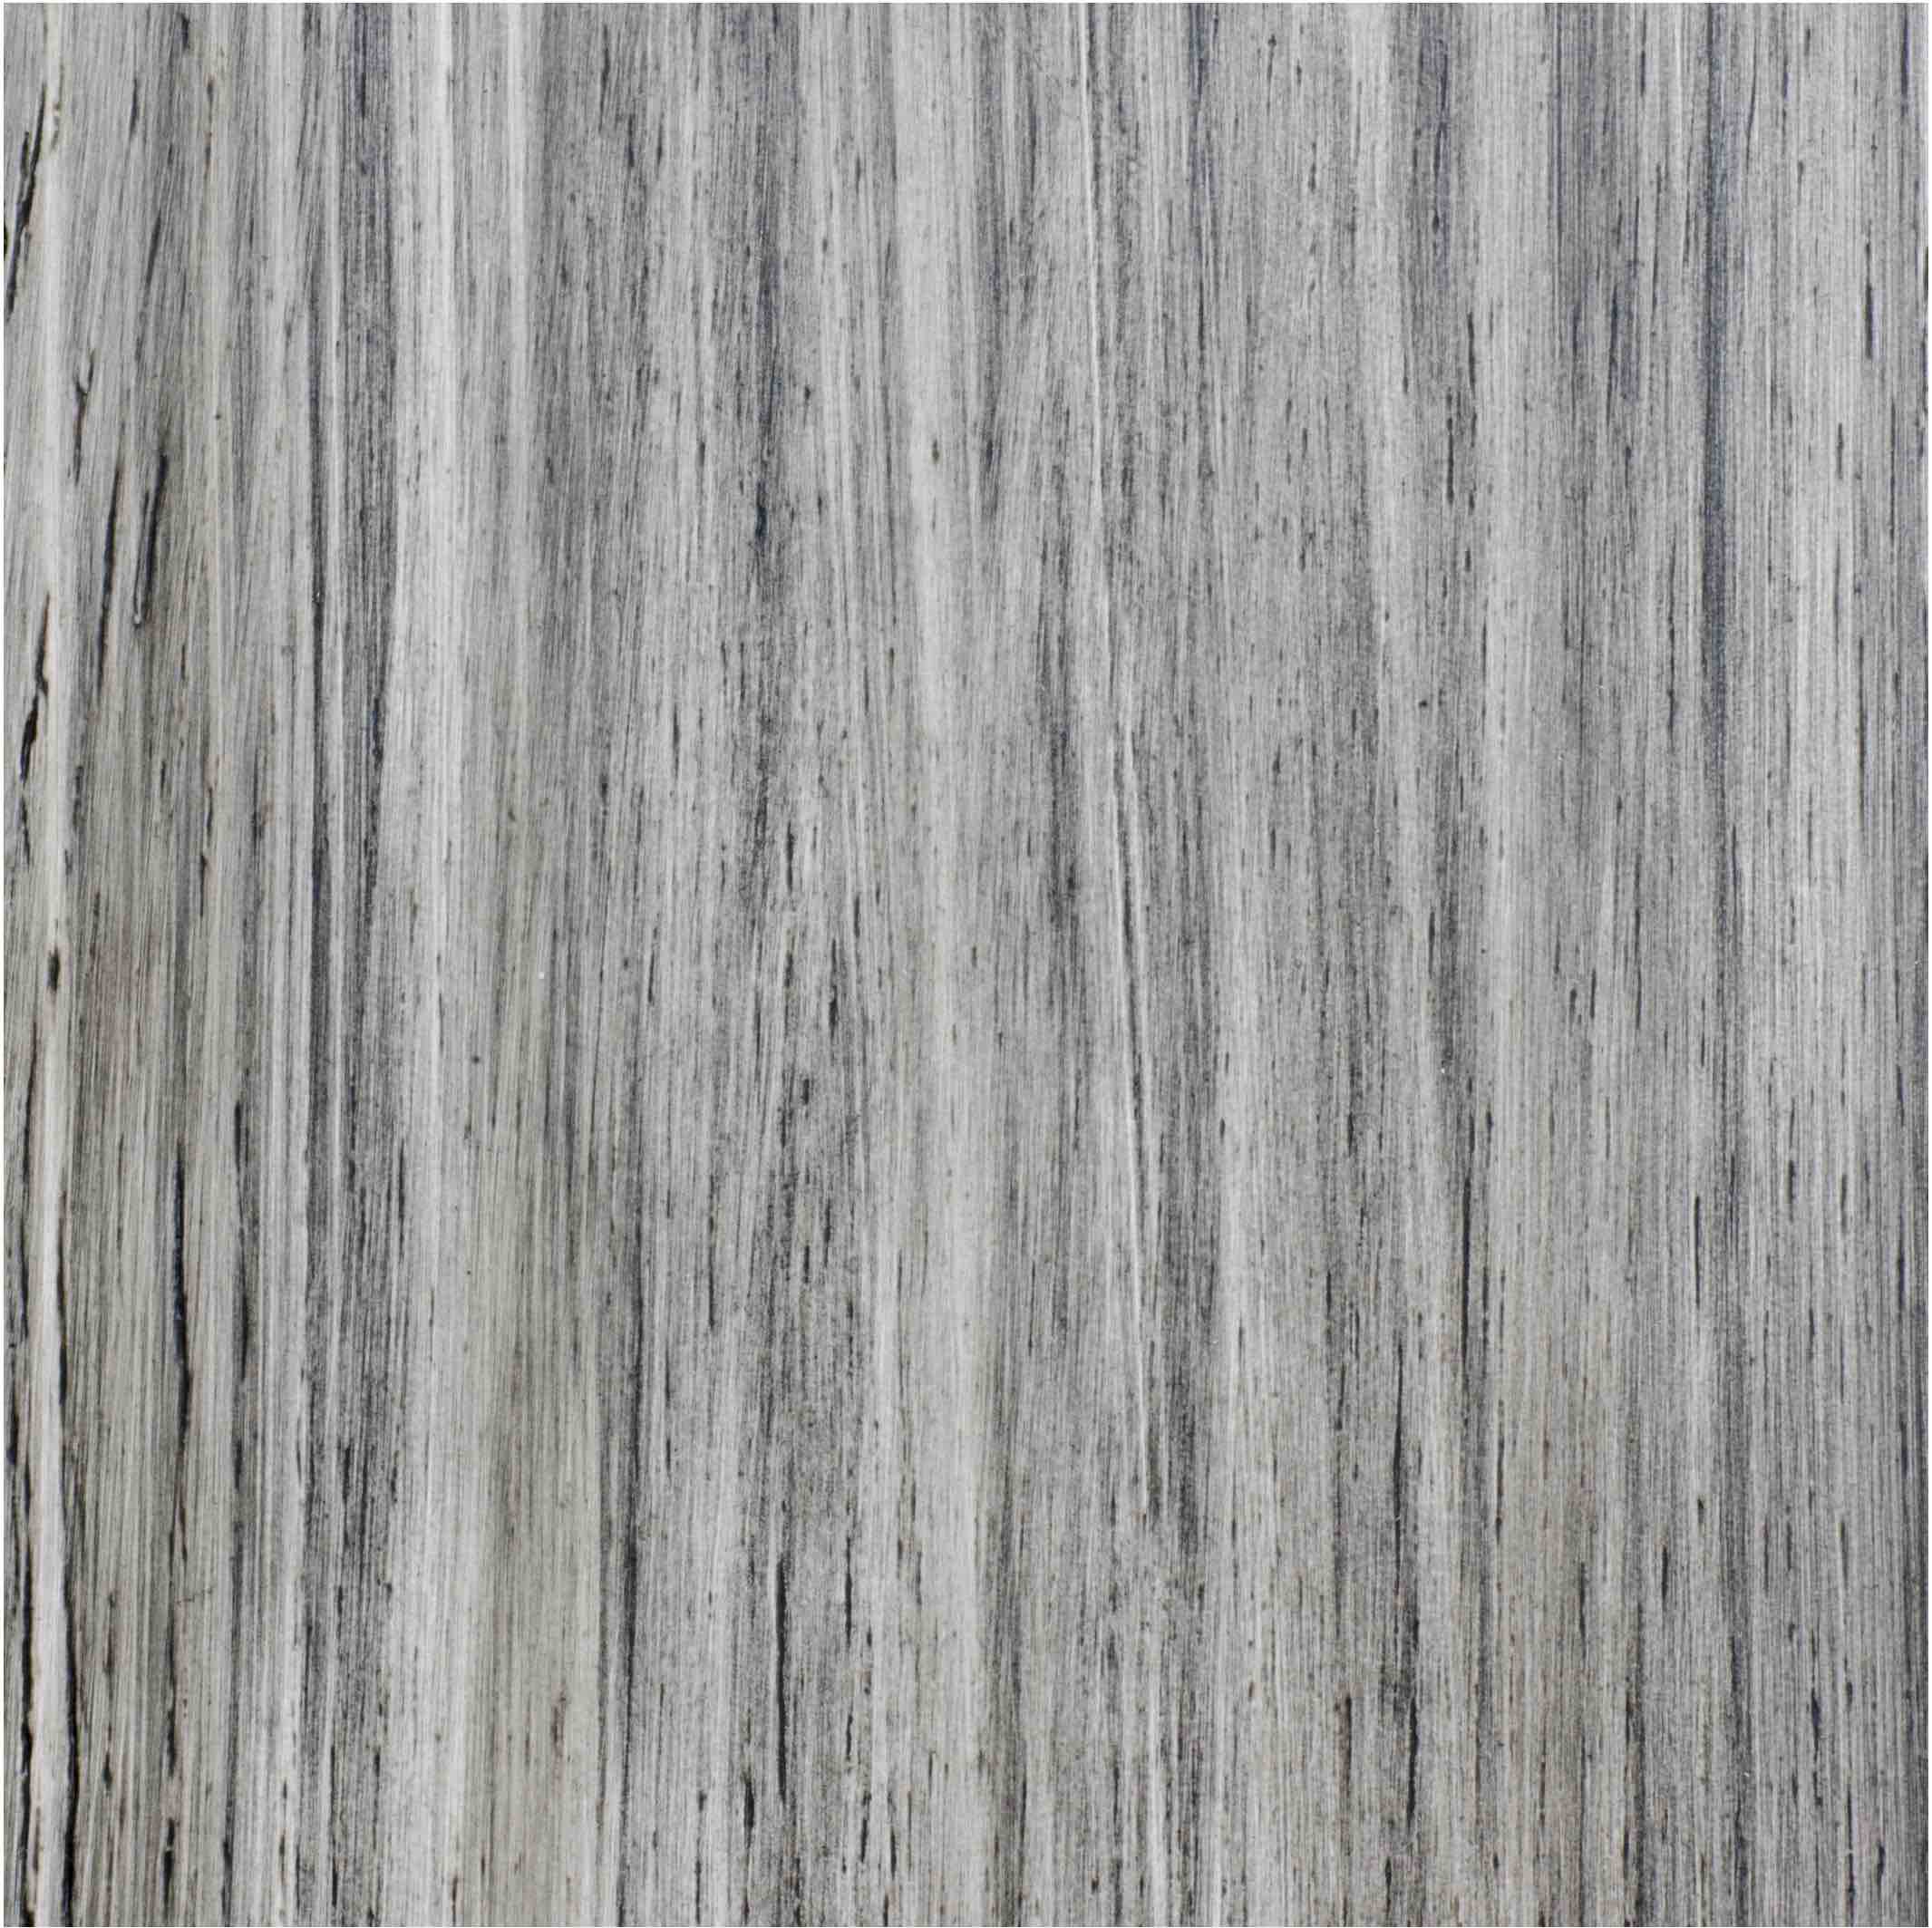 Custom Color Engineered Hardwood Flooring Best Of 2017 Purezawood